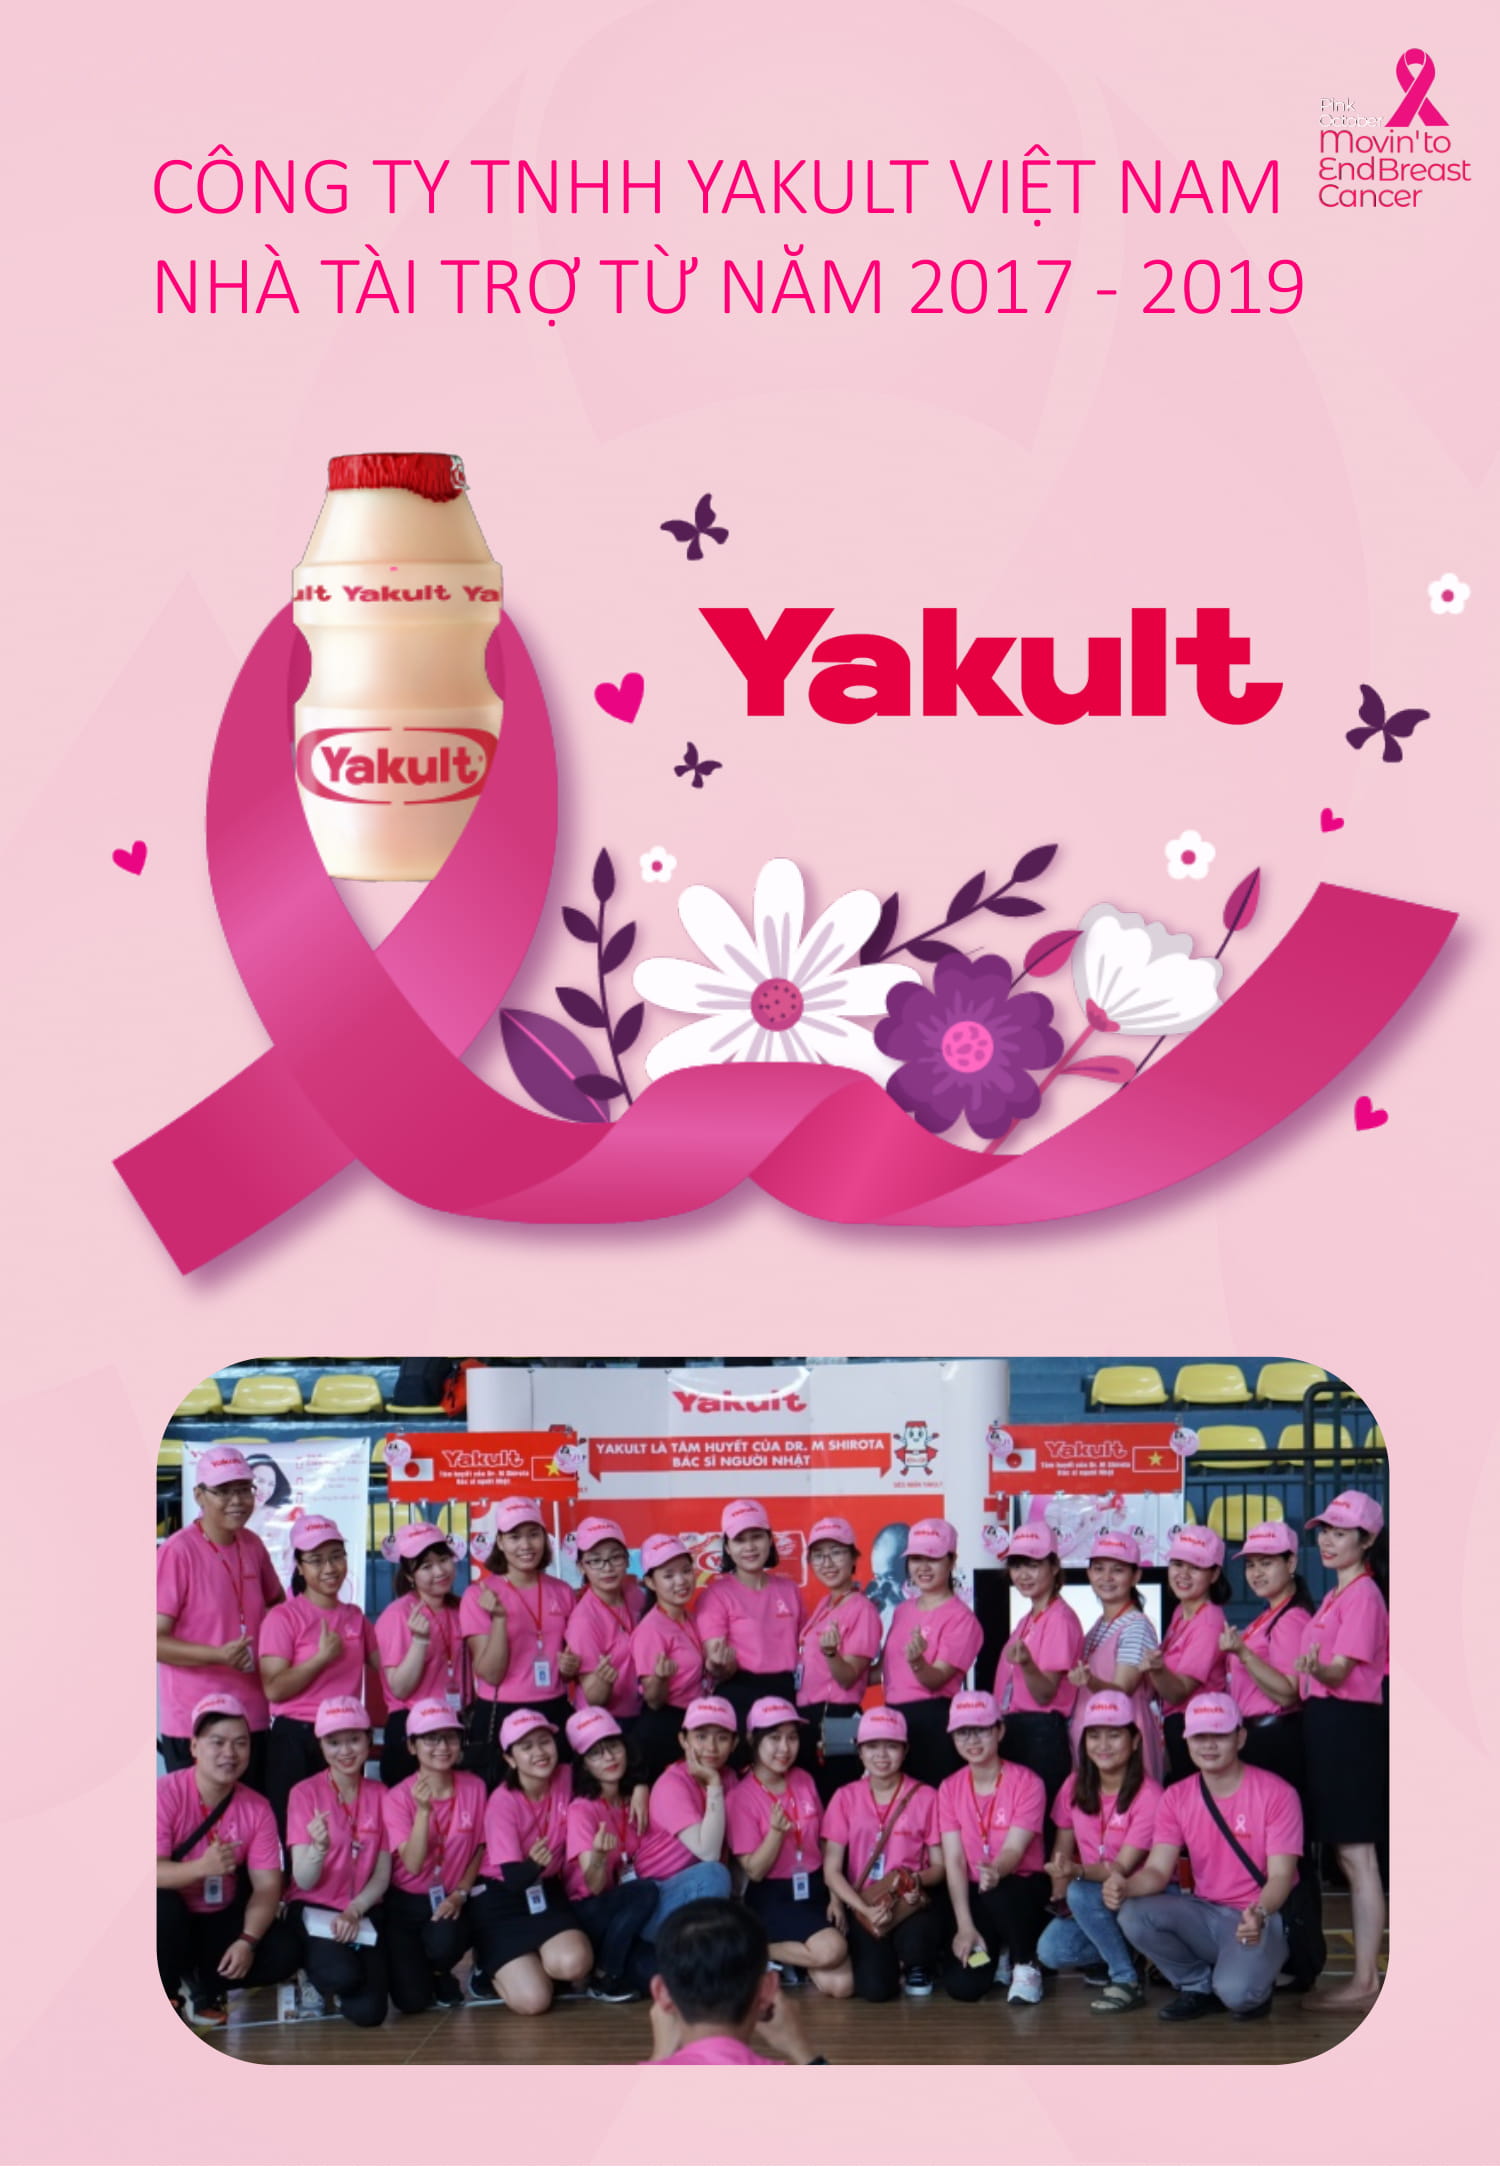 Yakult tài trợ từ năm 2017 - 2019